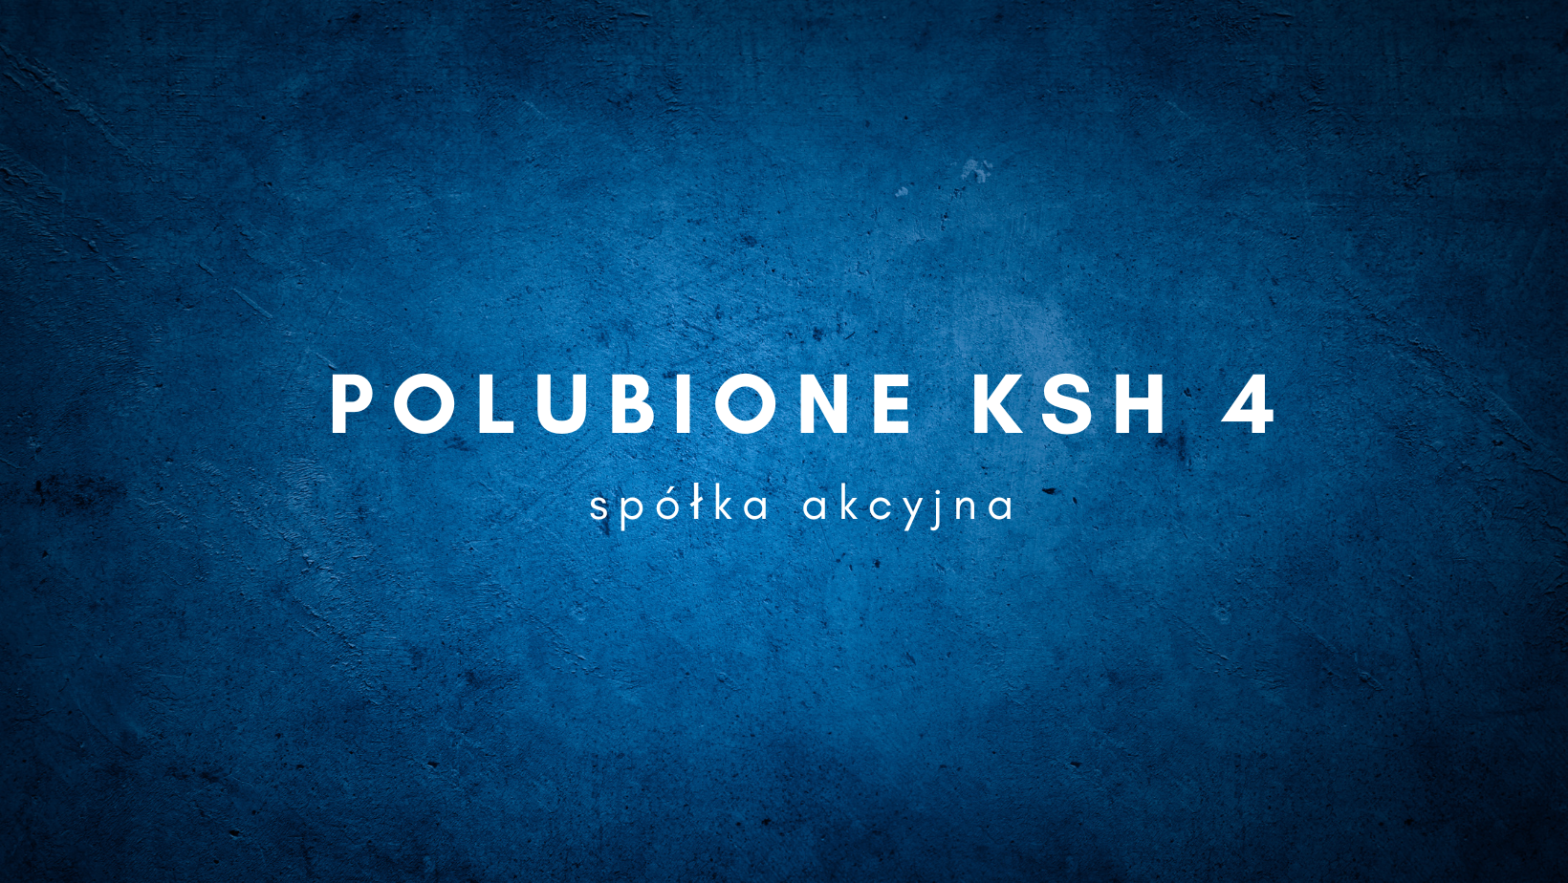 POLUBIONE KSH4 - statut spółki akcyjnej